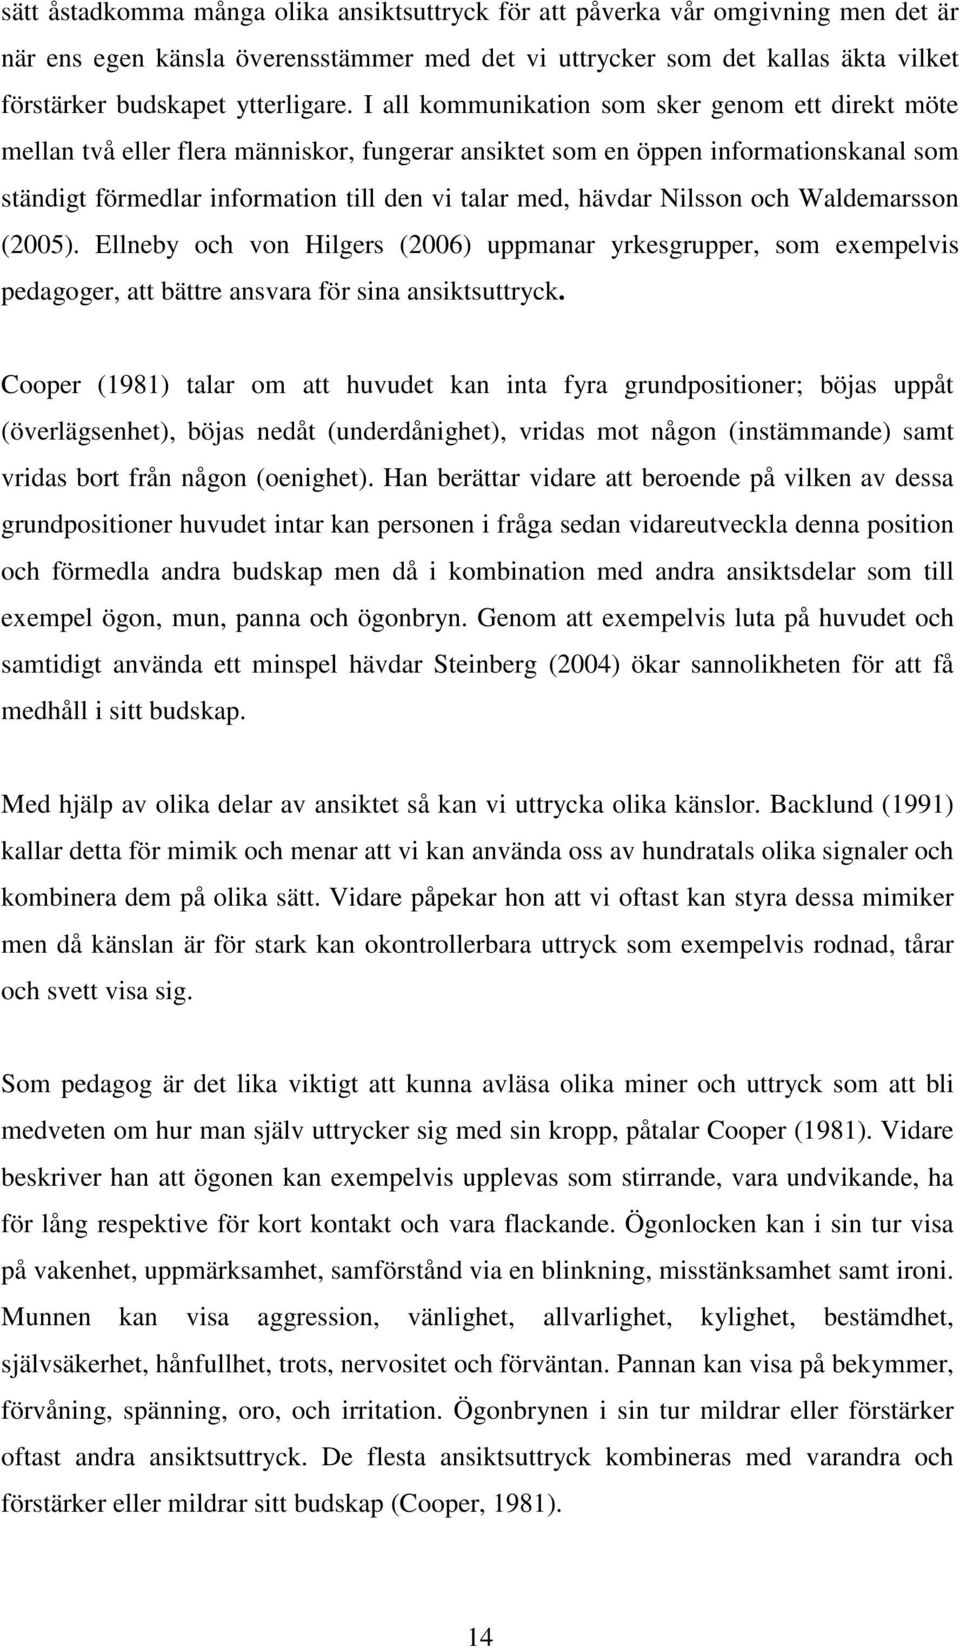 Nilsson och Waldemarsson (2005). Ellneby och von Hilgers (2006) uppmanar yrkesgrupper, som exempelvis pedagoger, att bättre ansvara för sina ansiktsuttryck.